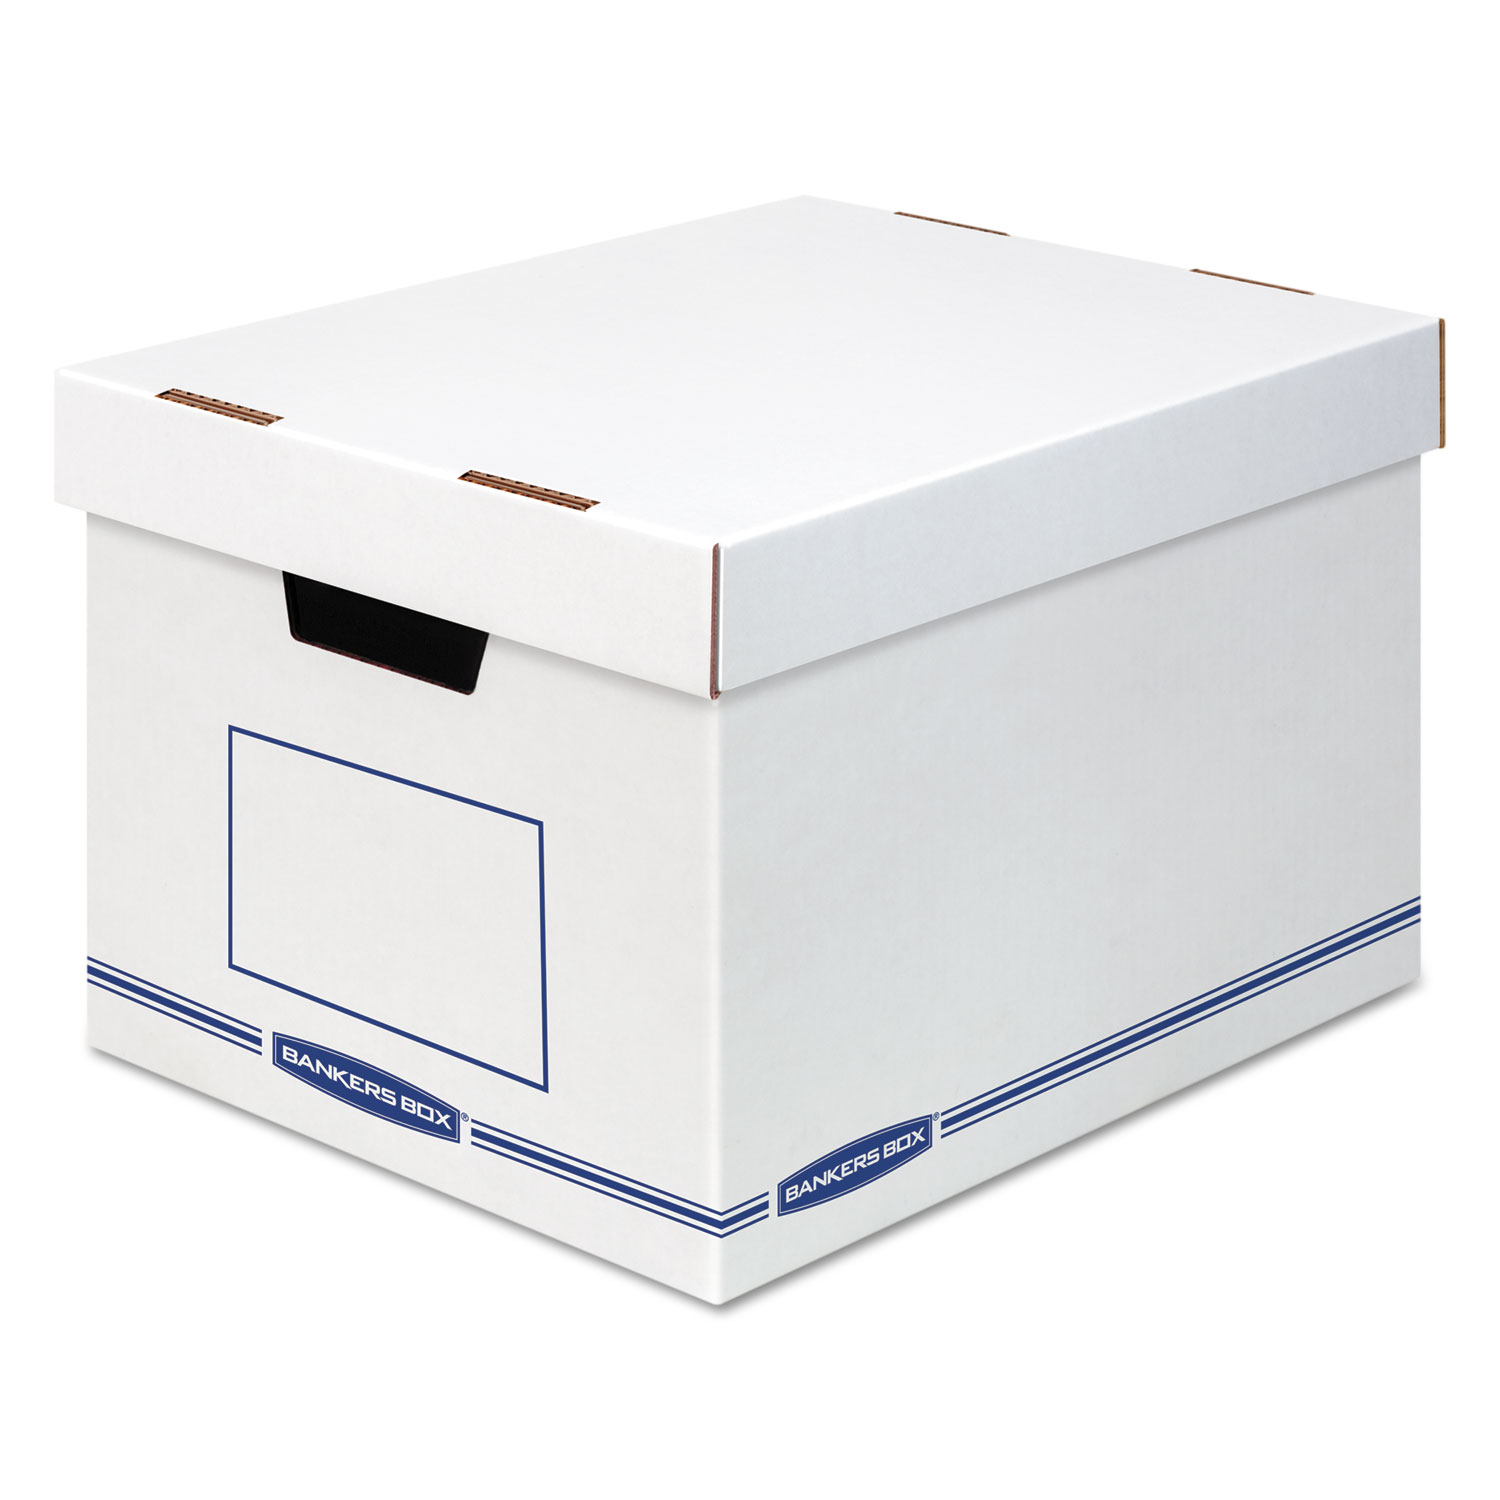  Bankers Box 4662401 Organizer Storage Boxes, X-Large, 12.75 x 16.5 x 10.5, White/Blue, 12/Carton (FEL4662401) 